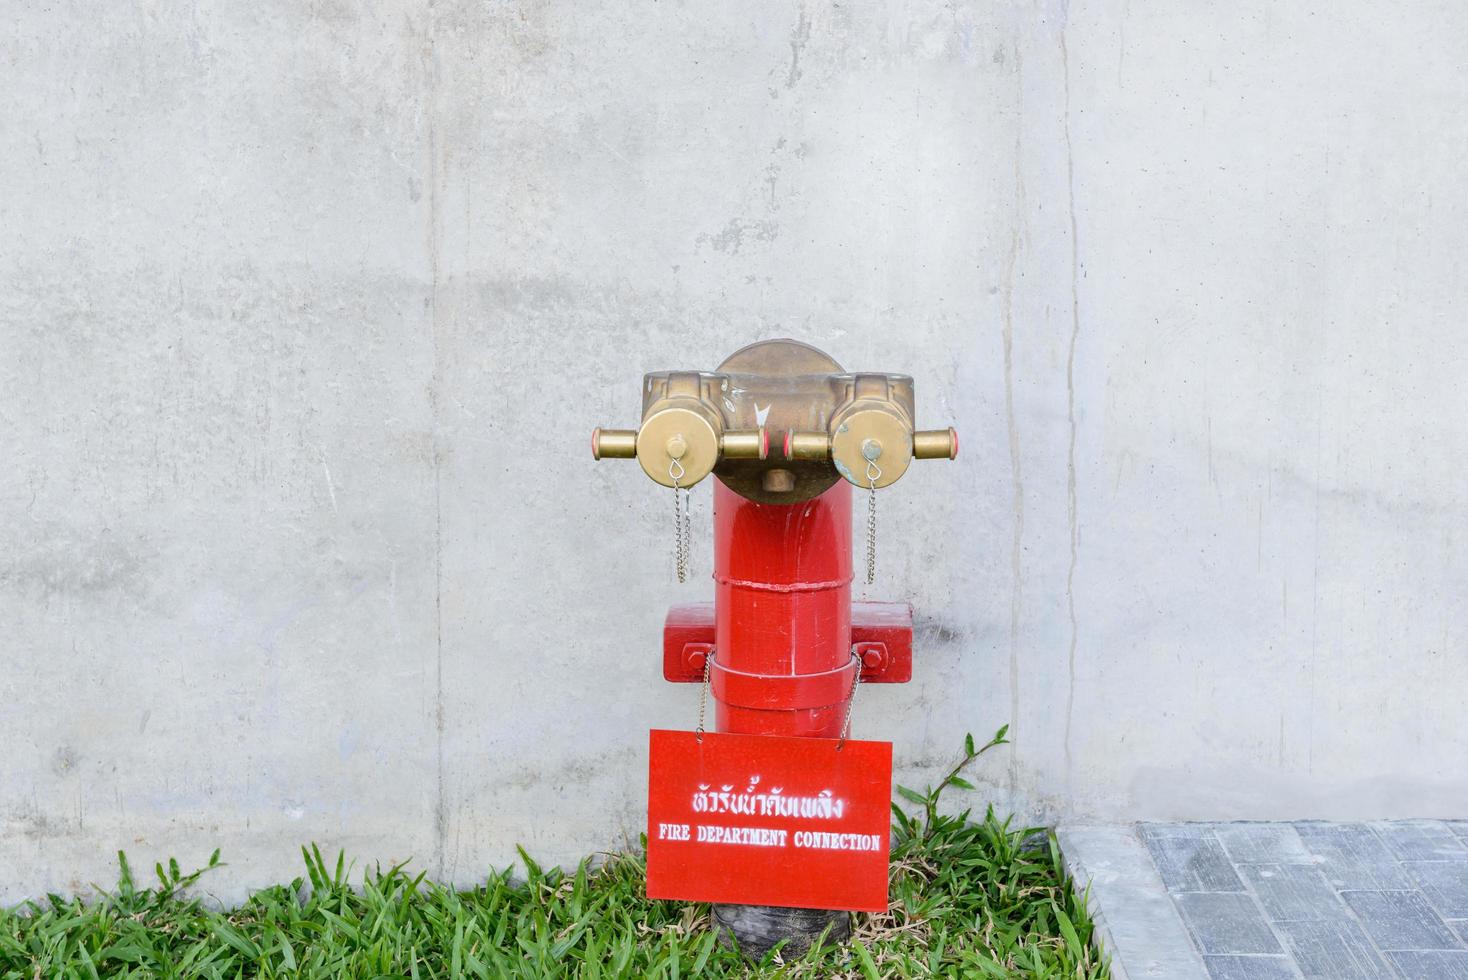 Válvula de água de saída do coletor de hidrante de incêndio de duas saídas. ligação do corpo de bombeiros foto